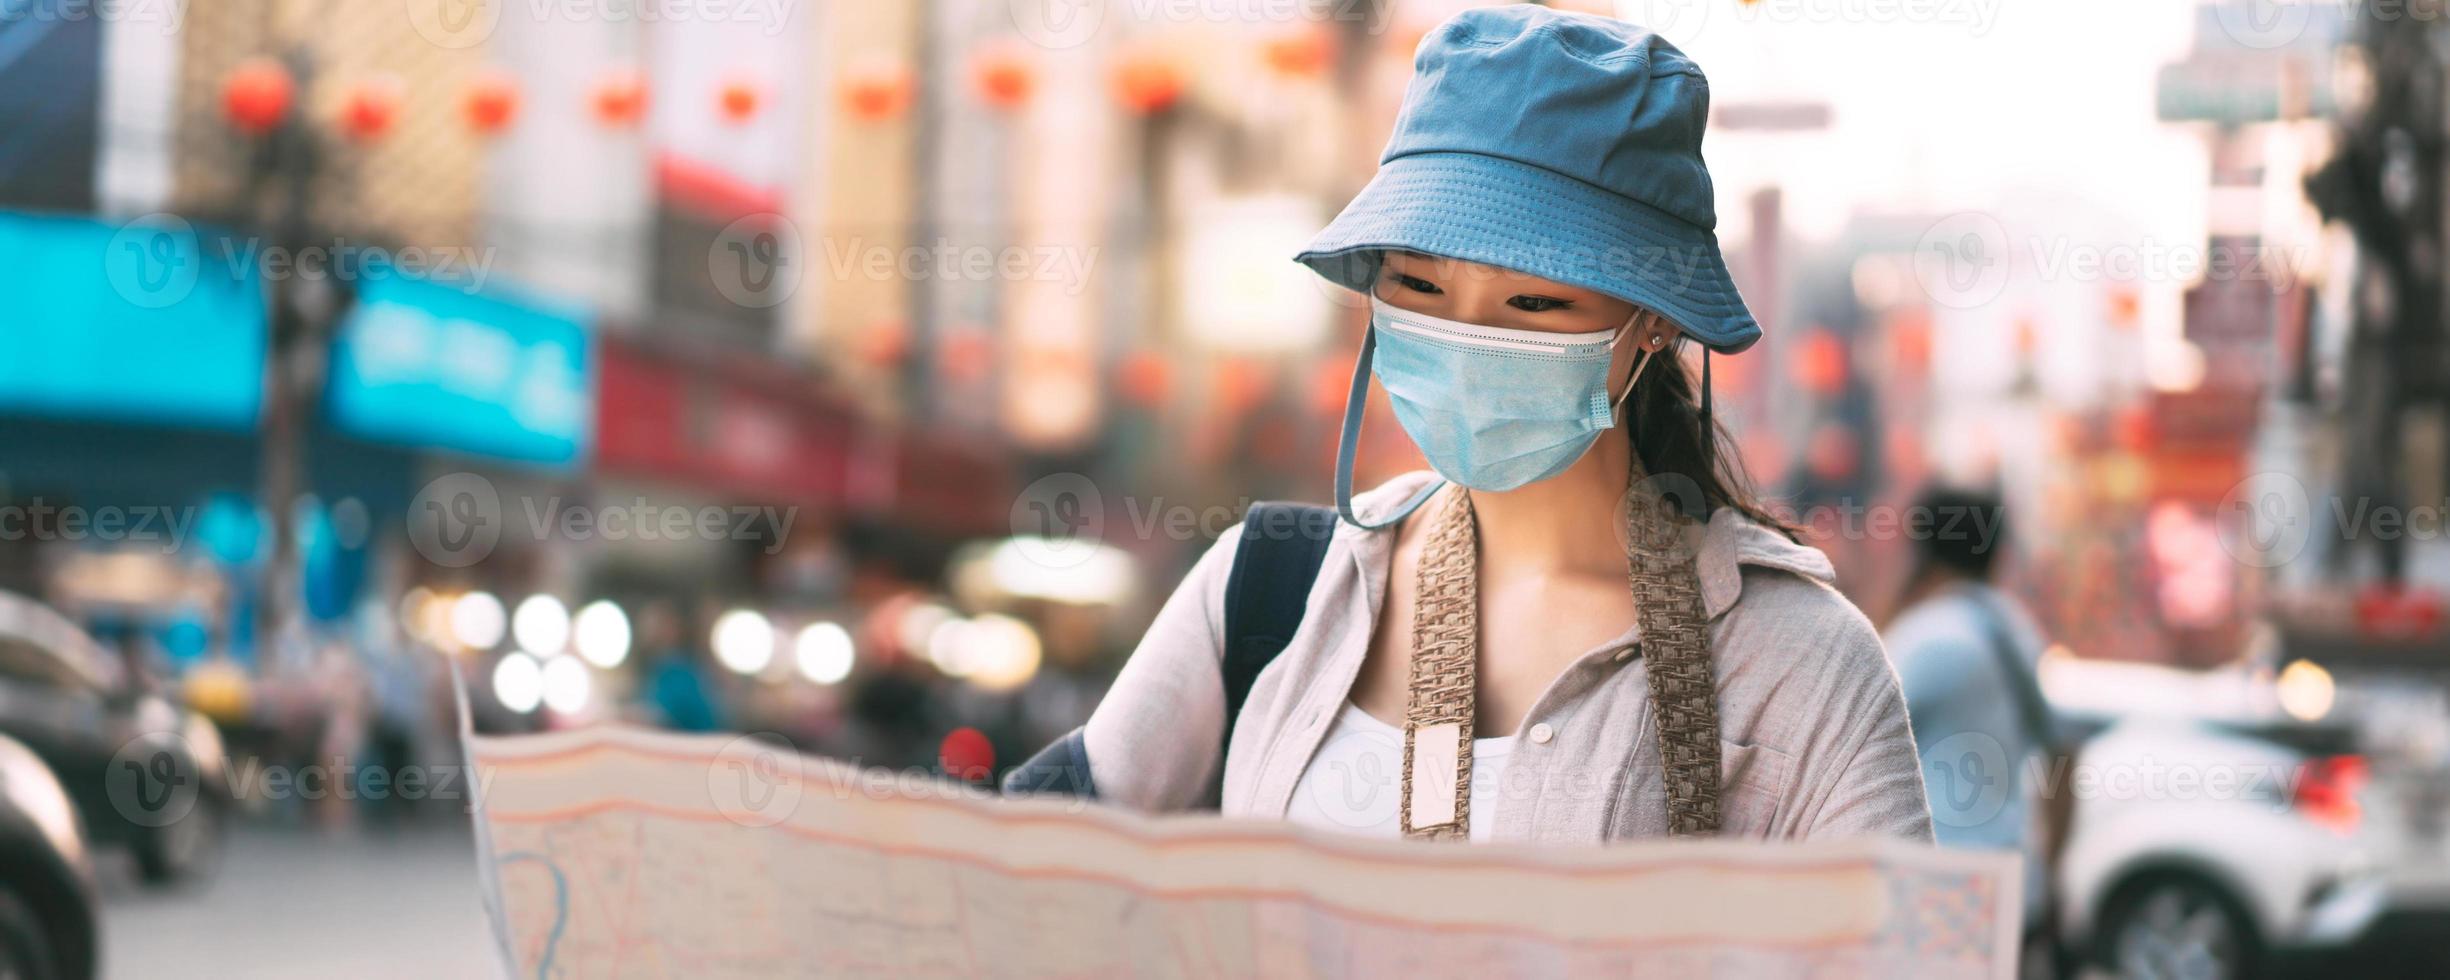 atractiva joven viajera asiática mujer usa máscara facial usando el fondo de la pancarta del mapa. foto